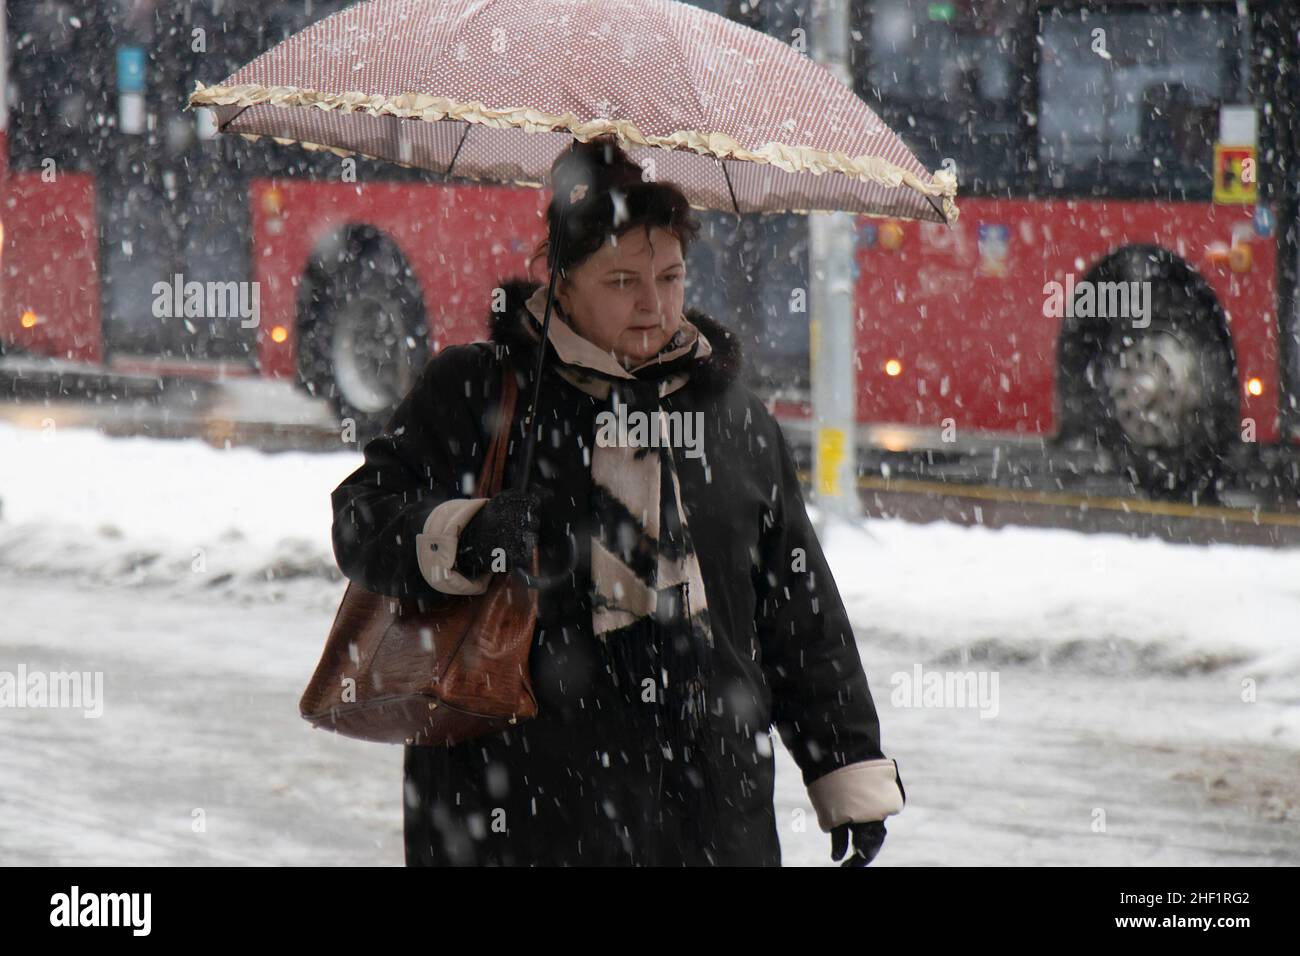 Belgrado, Serbia - 11 de enero de 2022: Una mujer caminando bajo paraguas en un día nevado de invierno en la calle de la ciudad Foto de stock